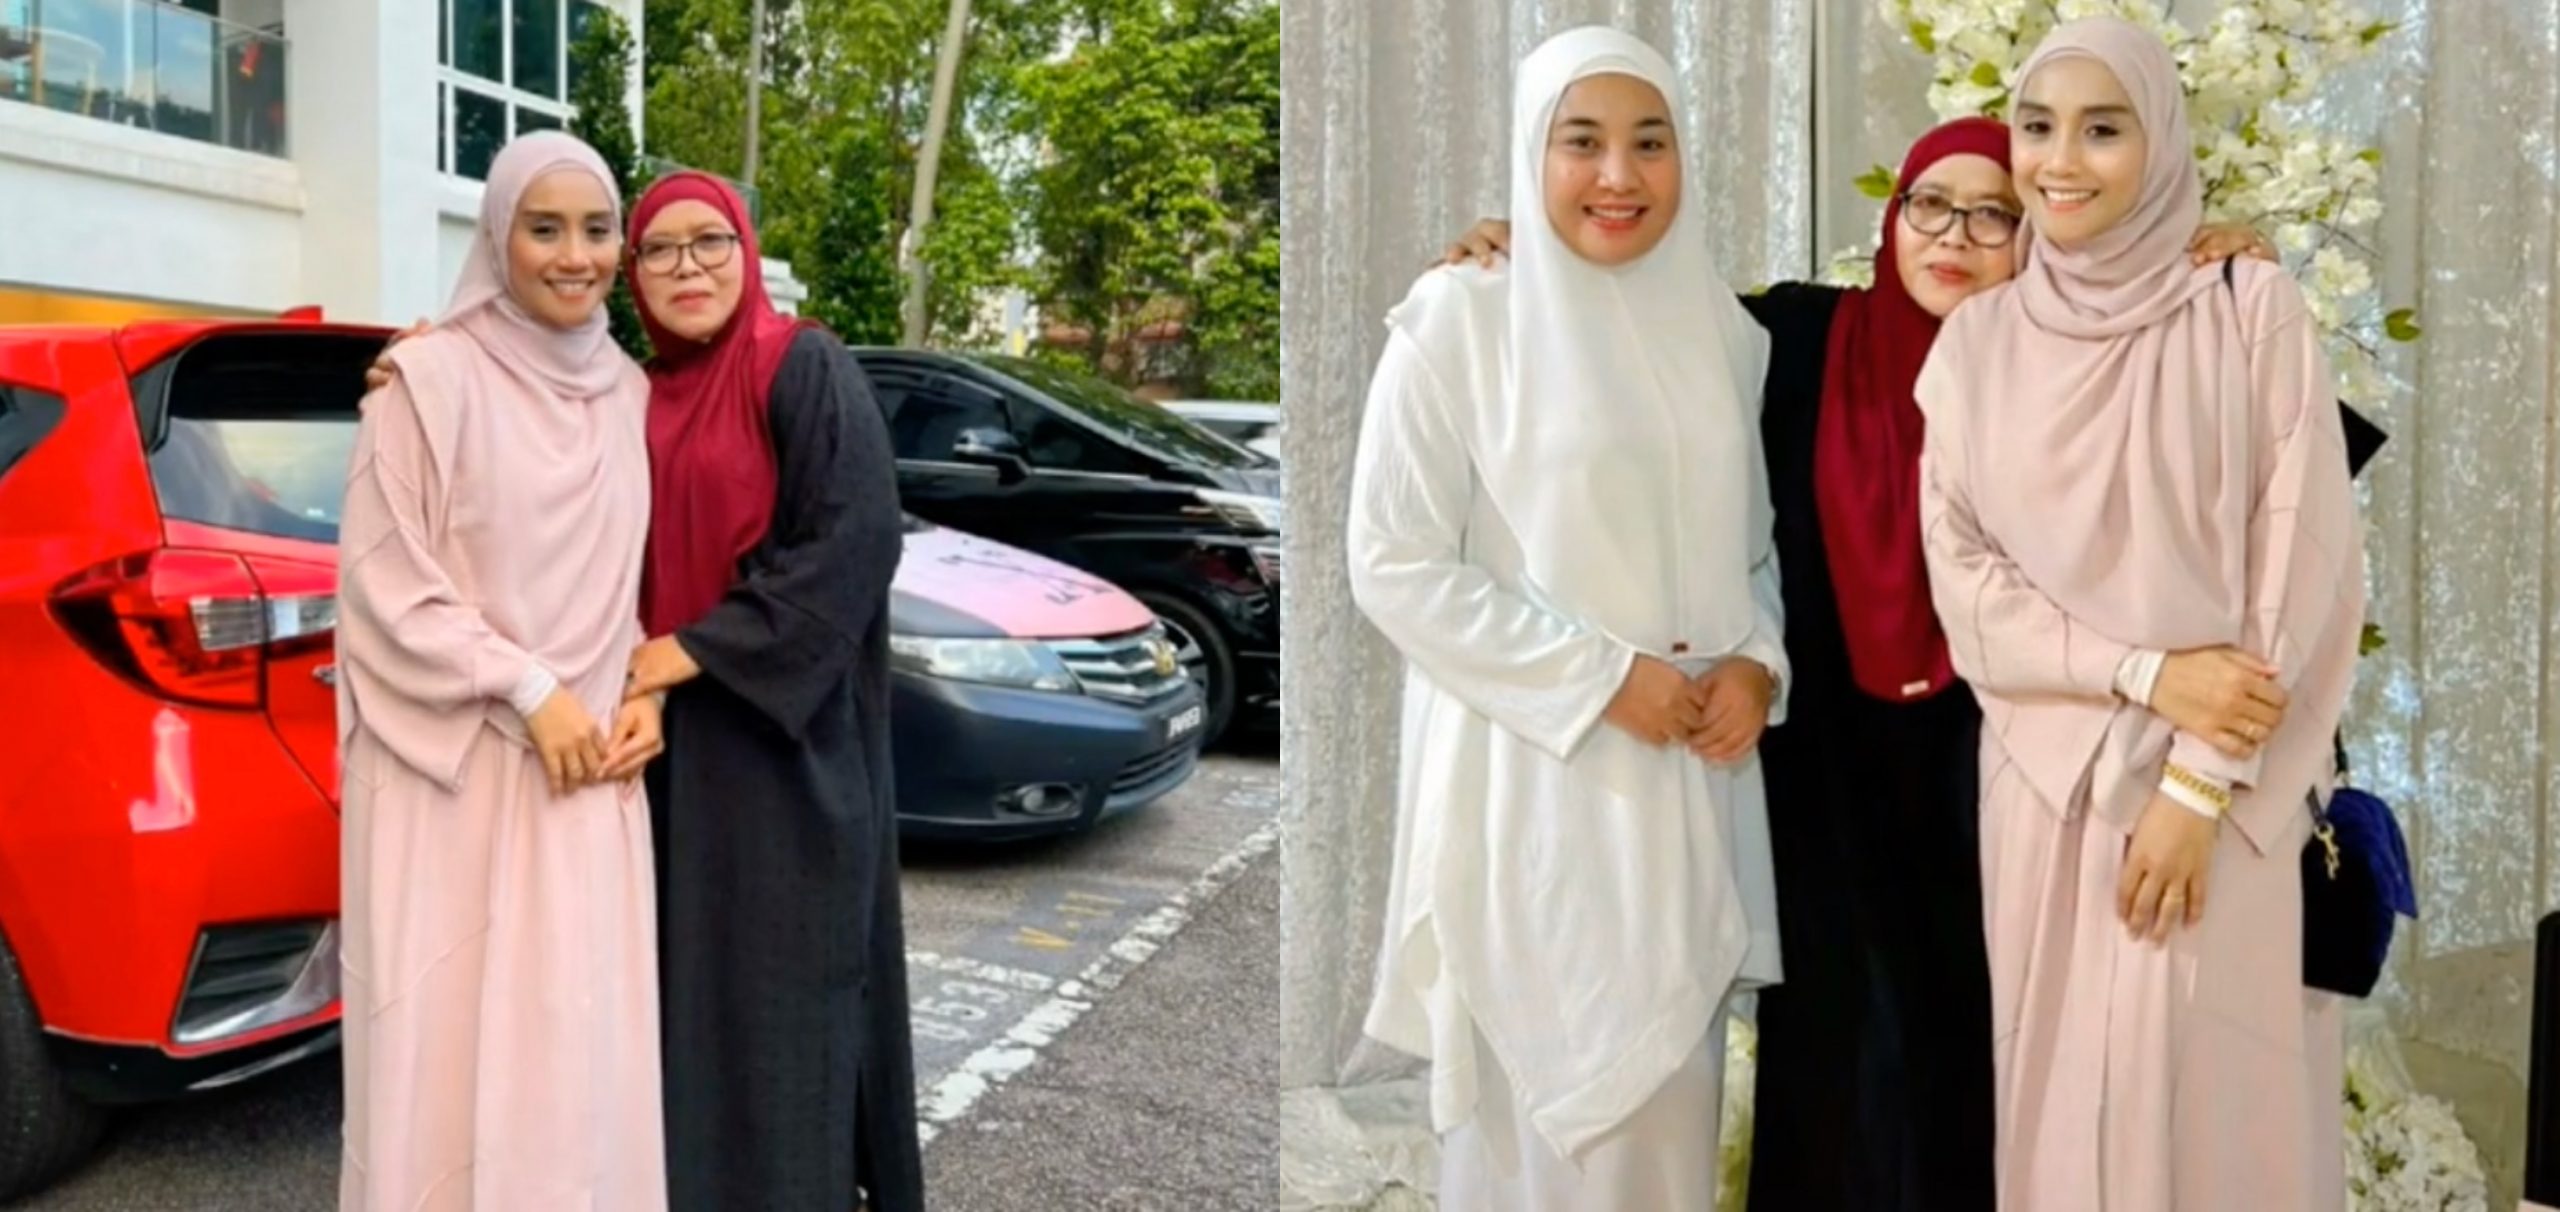 Muat Naik Foto Bersama Wan Sharmila, Ibu Shuib Tulis Caption Bagi Hint? – ‘Biar Gambar Berbicara’ 8